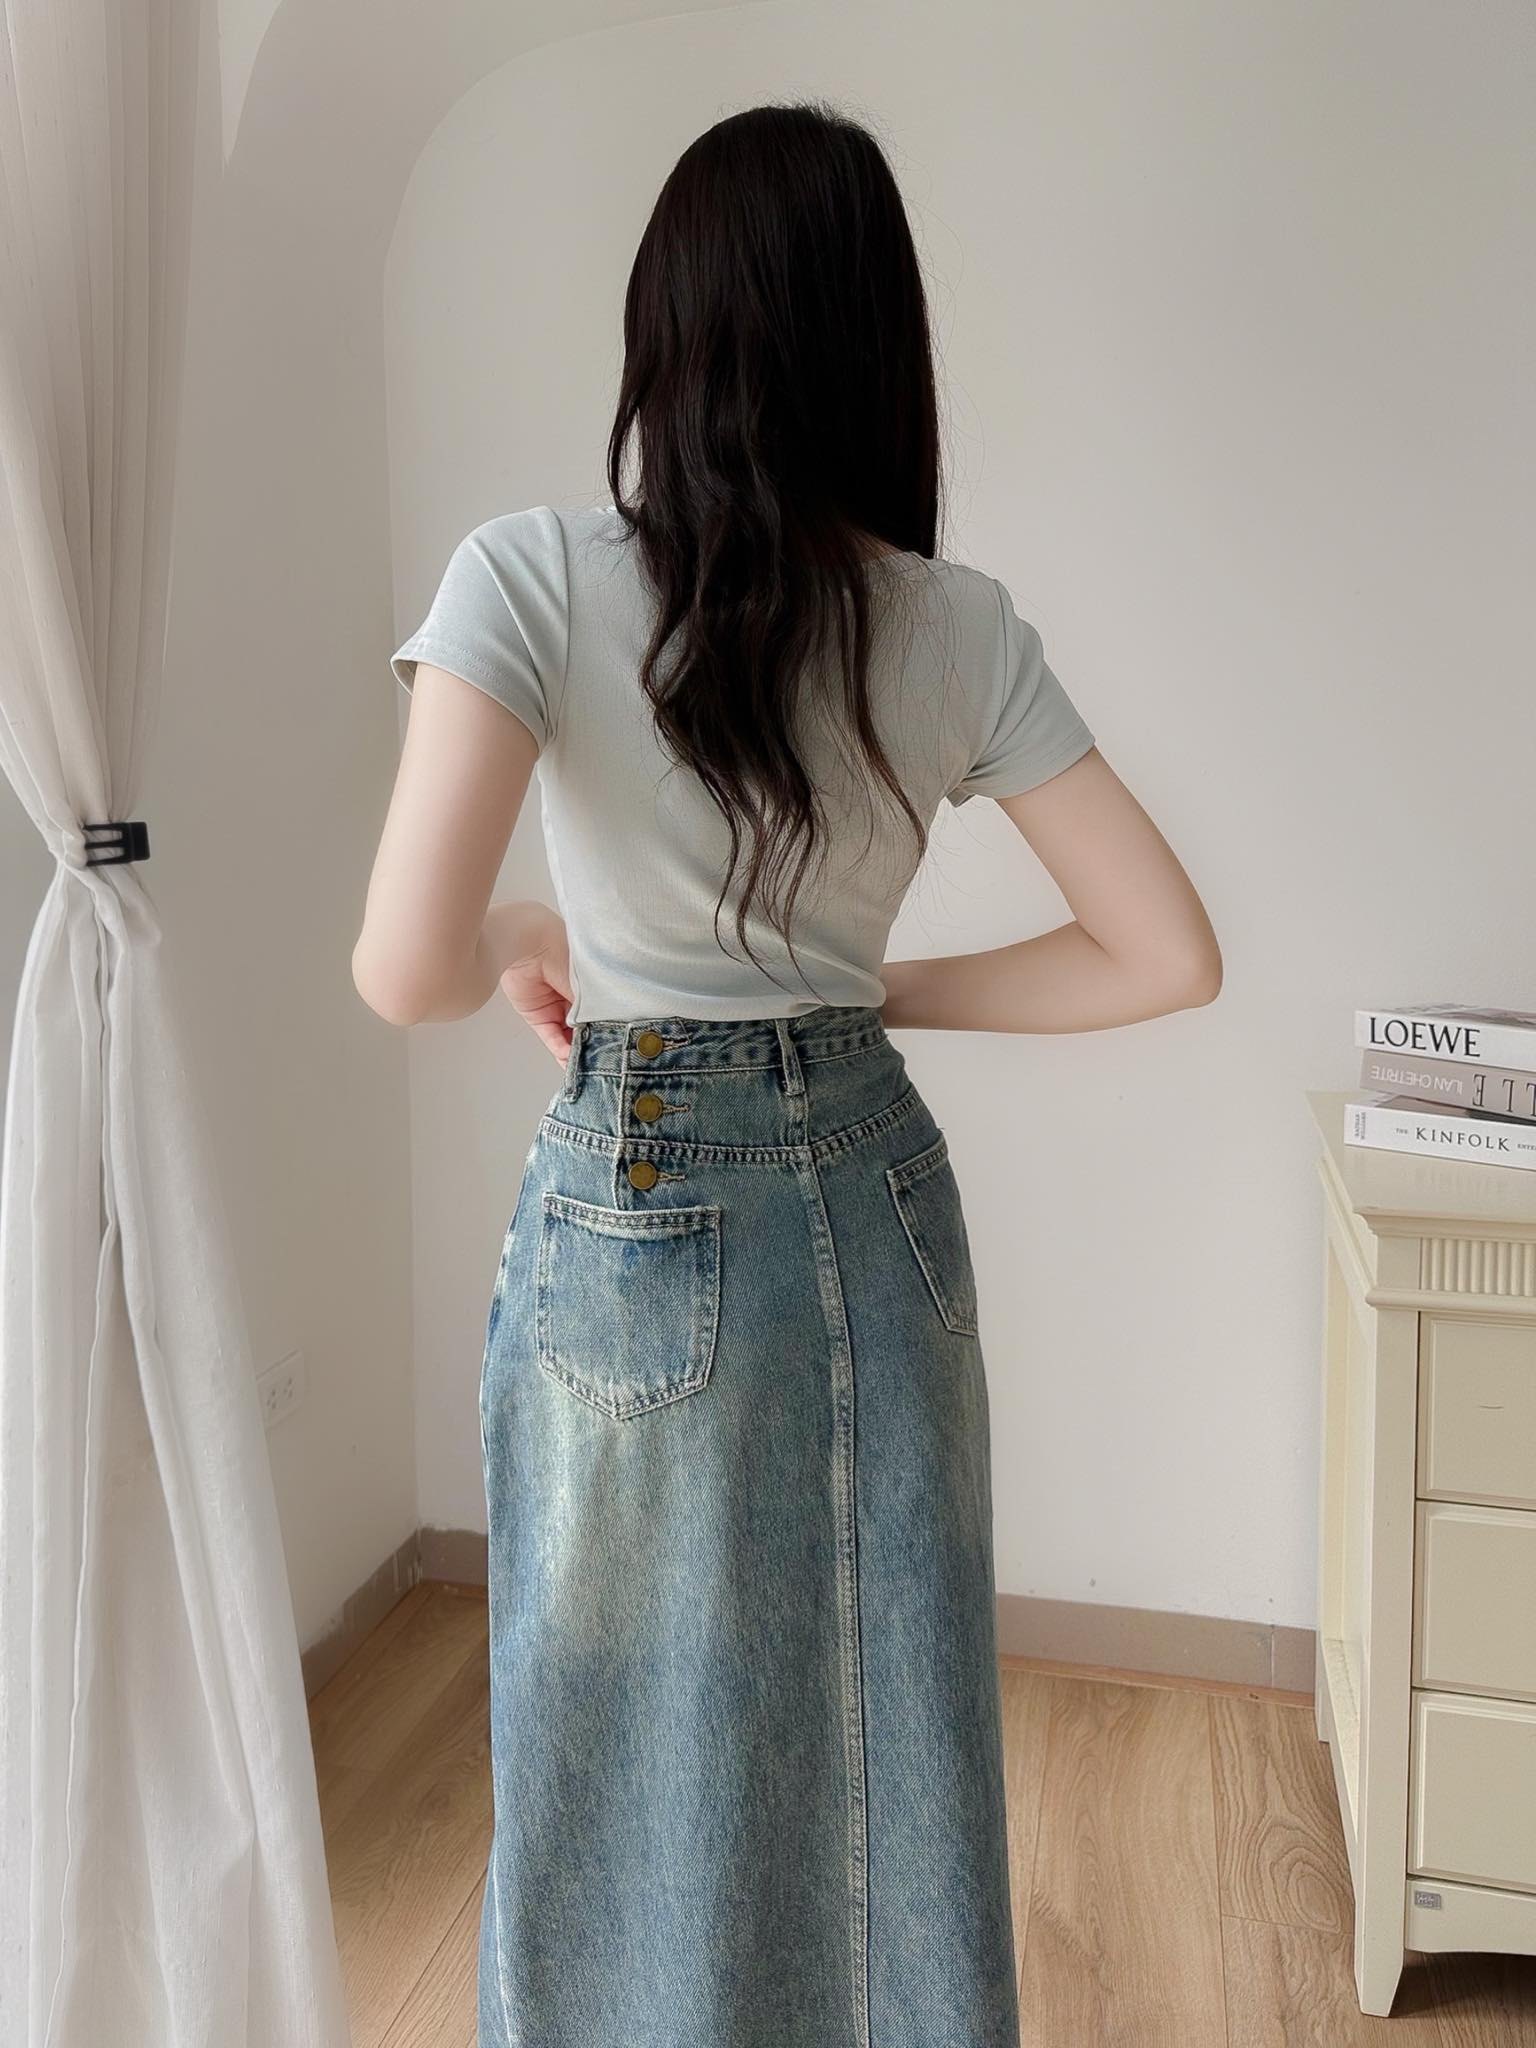 Chân váy jean dài qua gối mặc với áo gì đẹp phong cách nhất?